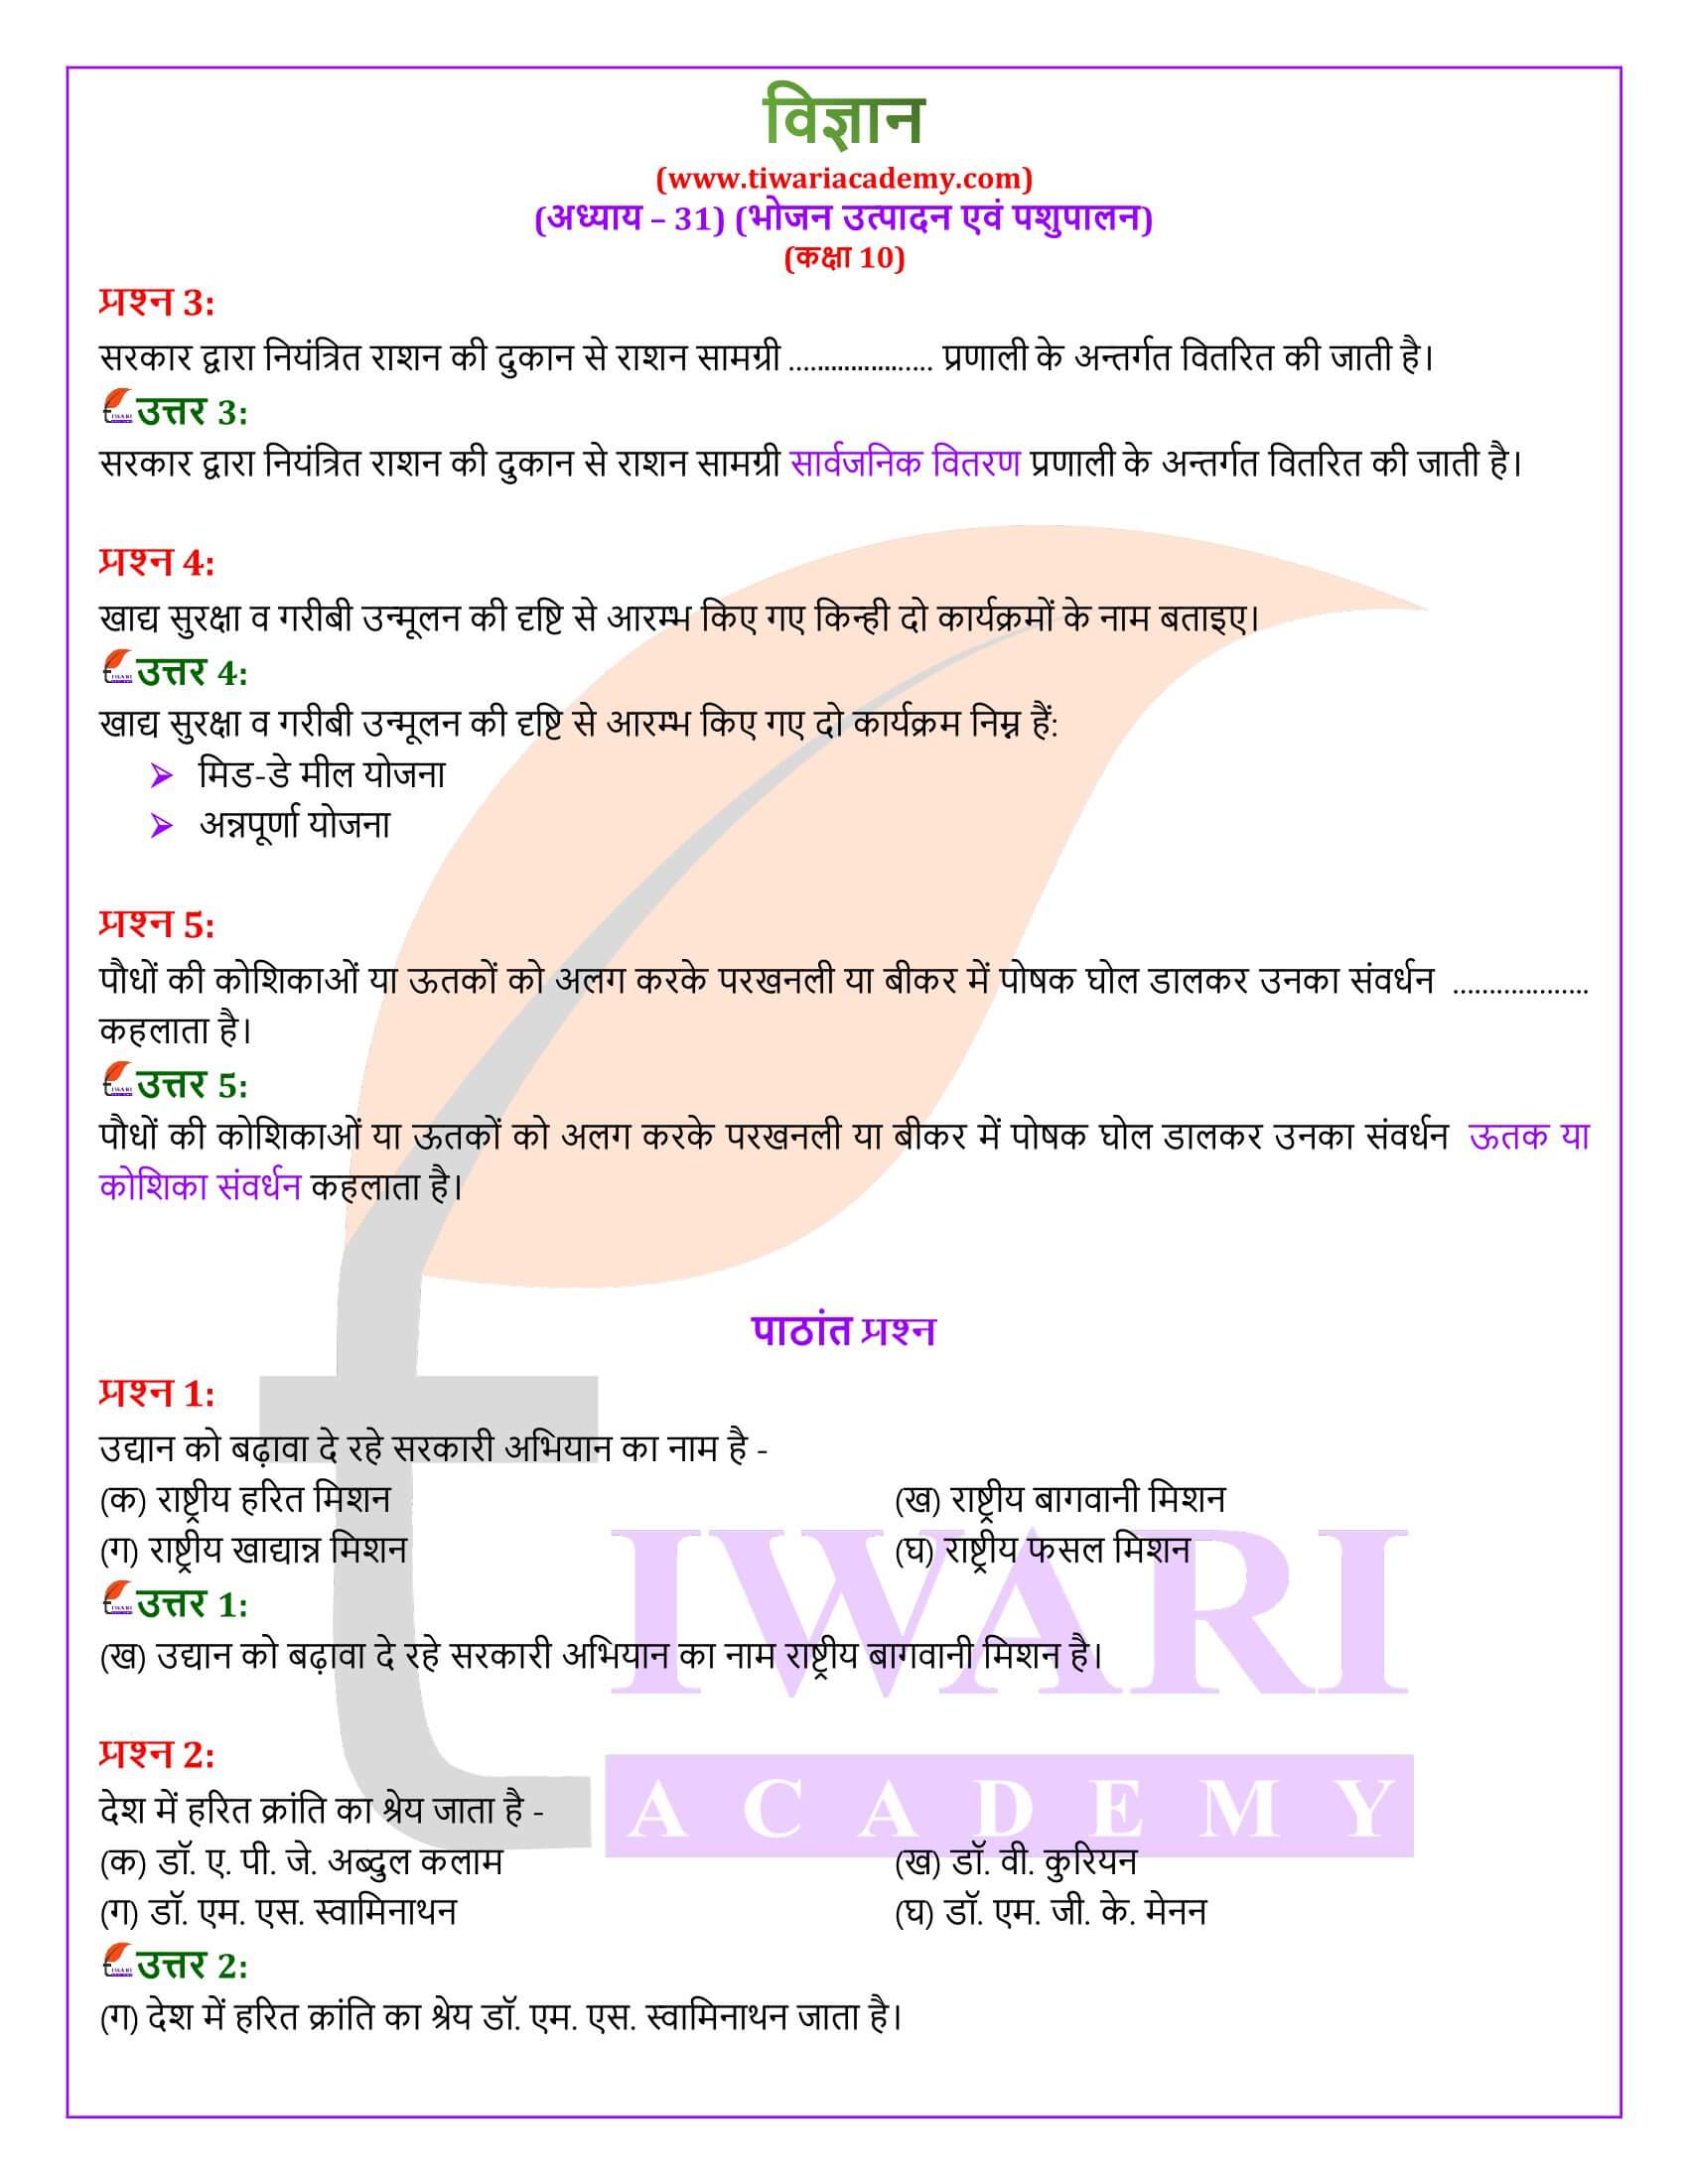 NIOS के लिए कक्षा 10 विज्ञान अध्याय 31 के हल हिंदी में